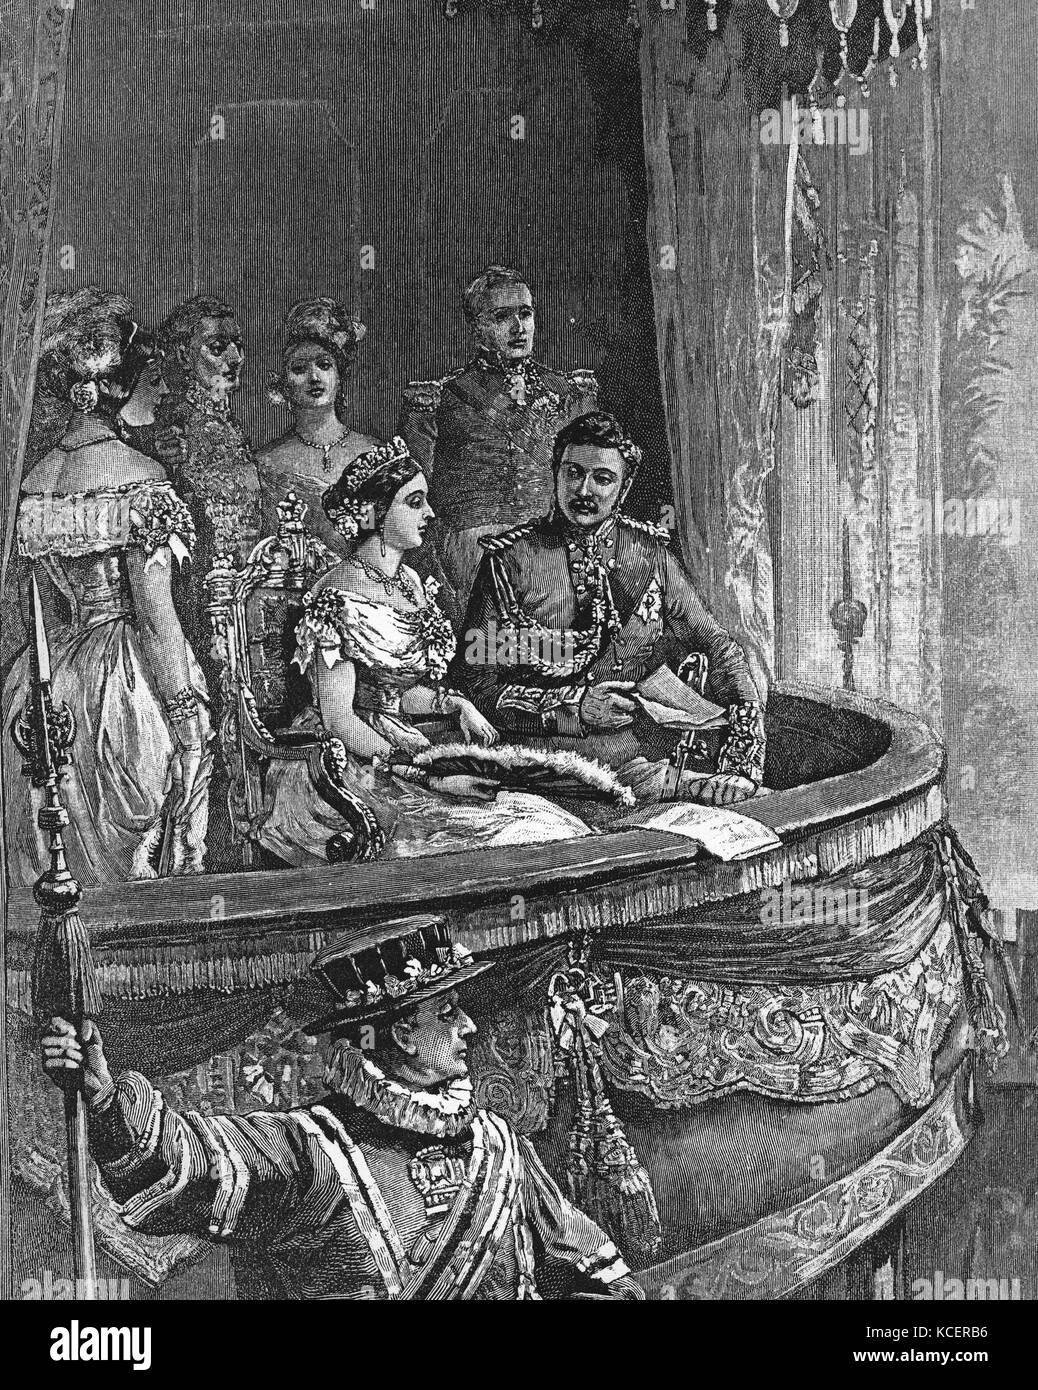 Kupferstich mit der Darstellung der königlichen Besuch von Königin Victoria (1819-1901) und Prinz Albert (1819-1861) bis zur Oper. Vom 19. Jahrhundert Stockfoto